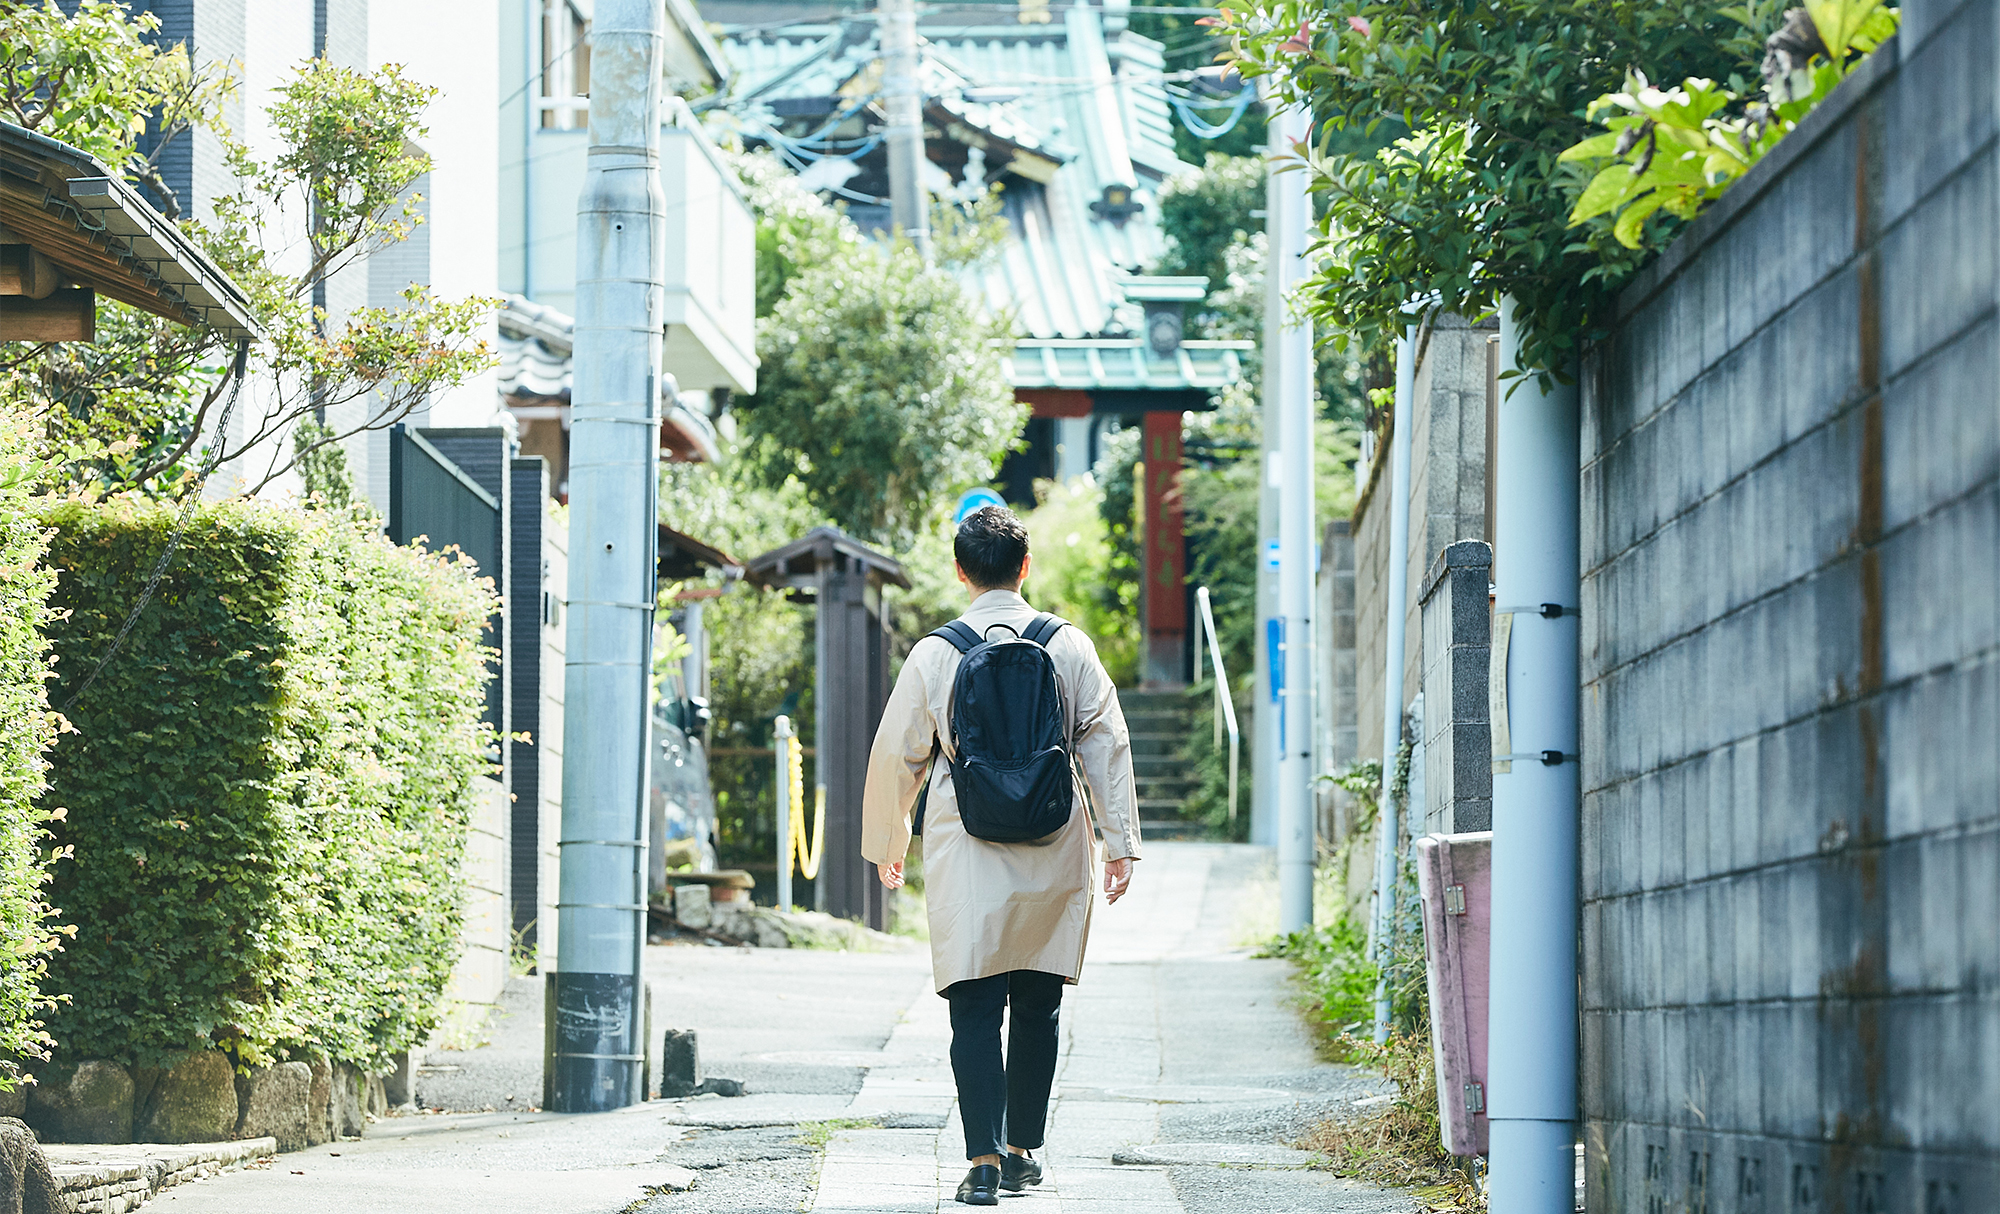 歩く、話す、見つける、とっておきの街歩き。<br> SANPO TALK -鎌倉・川辺洋平編（ASICS WALKING JOURNAL編集長）-